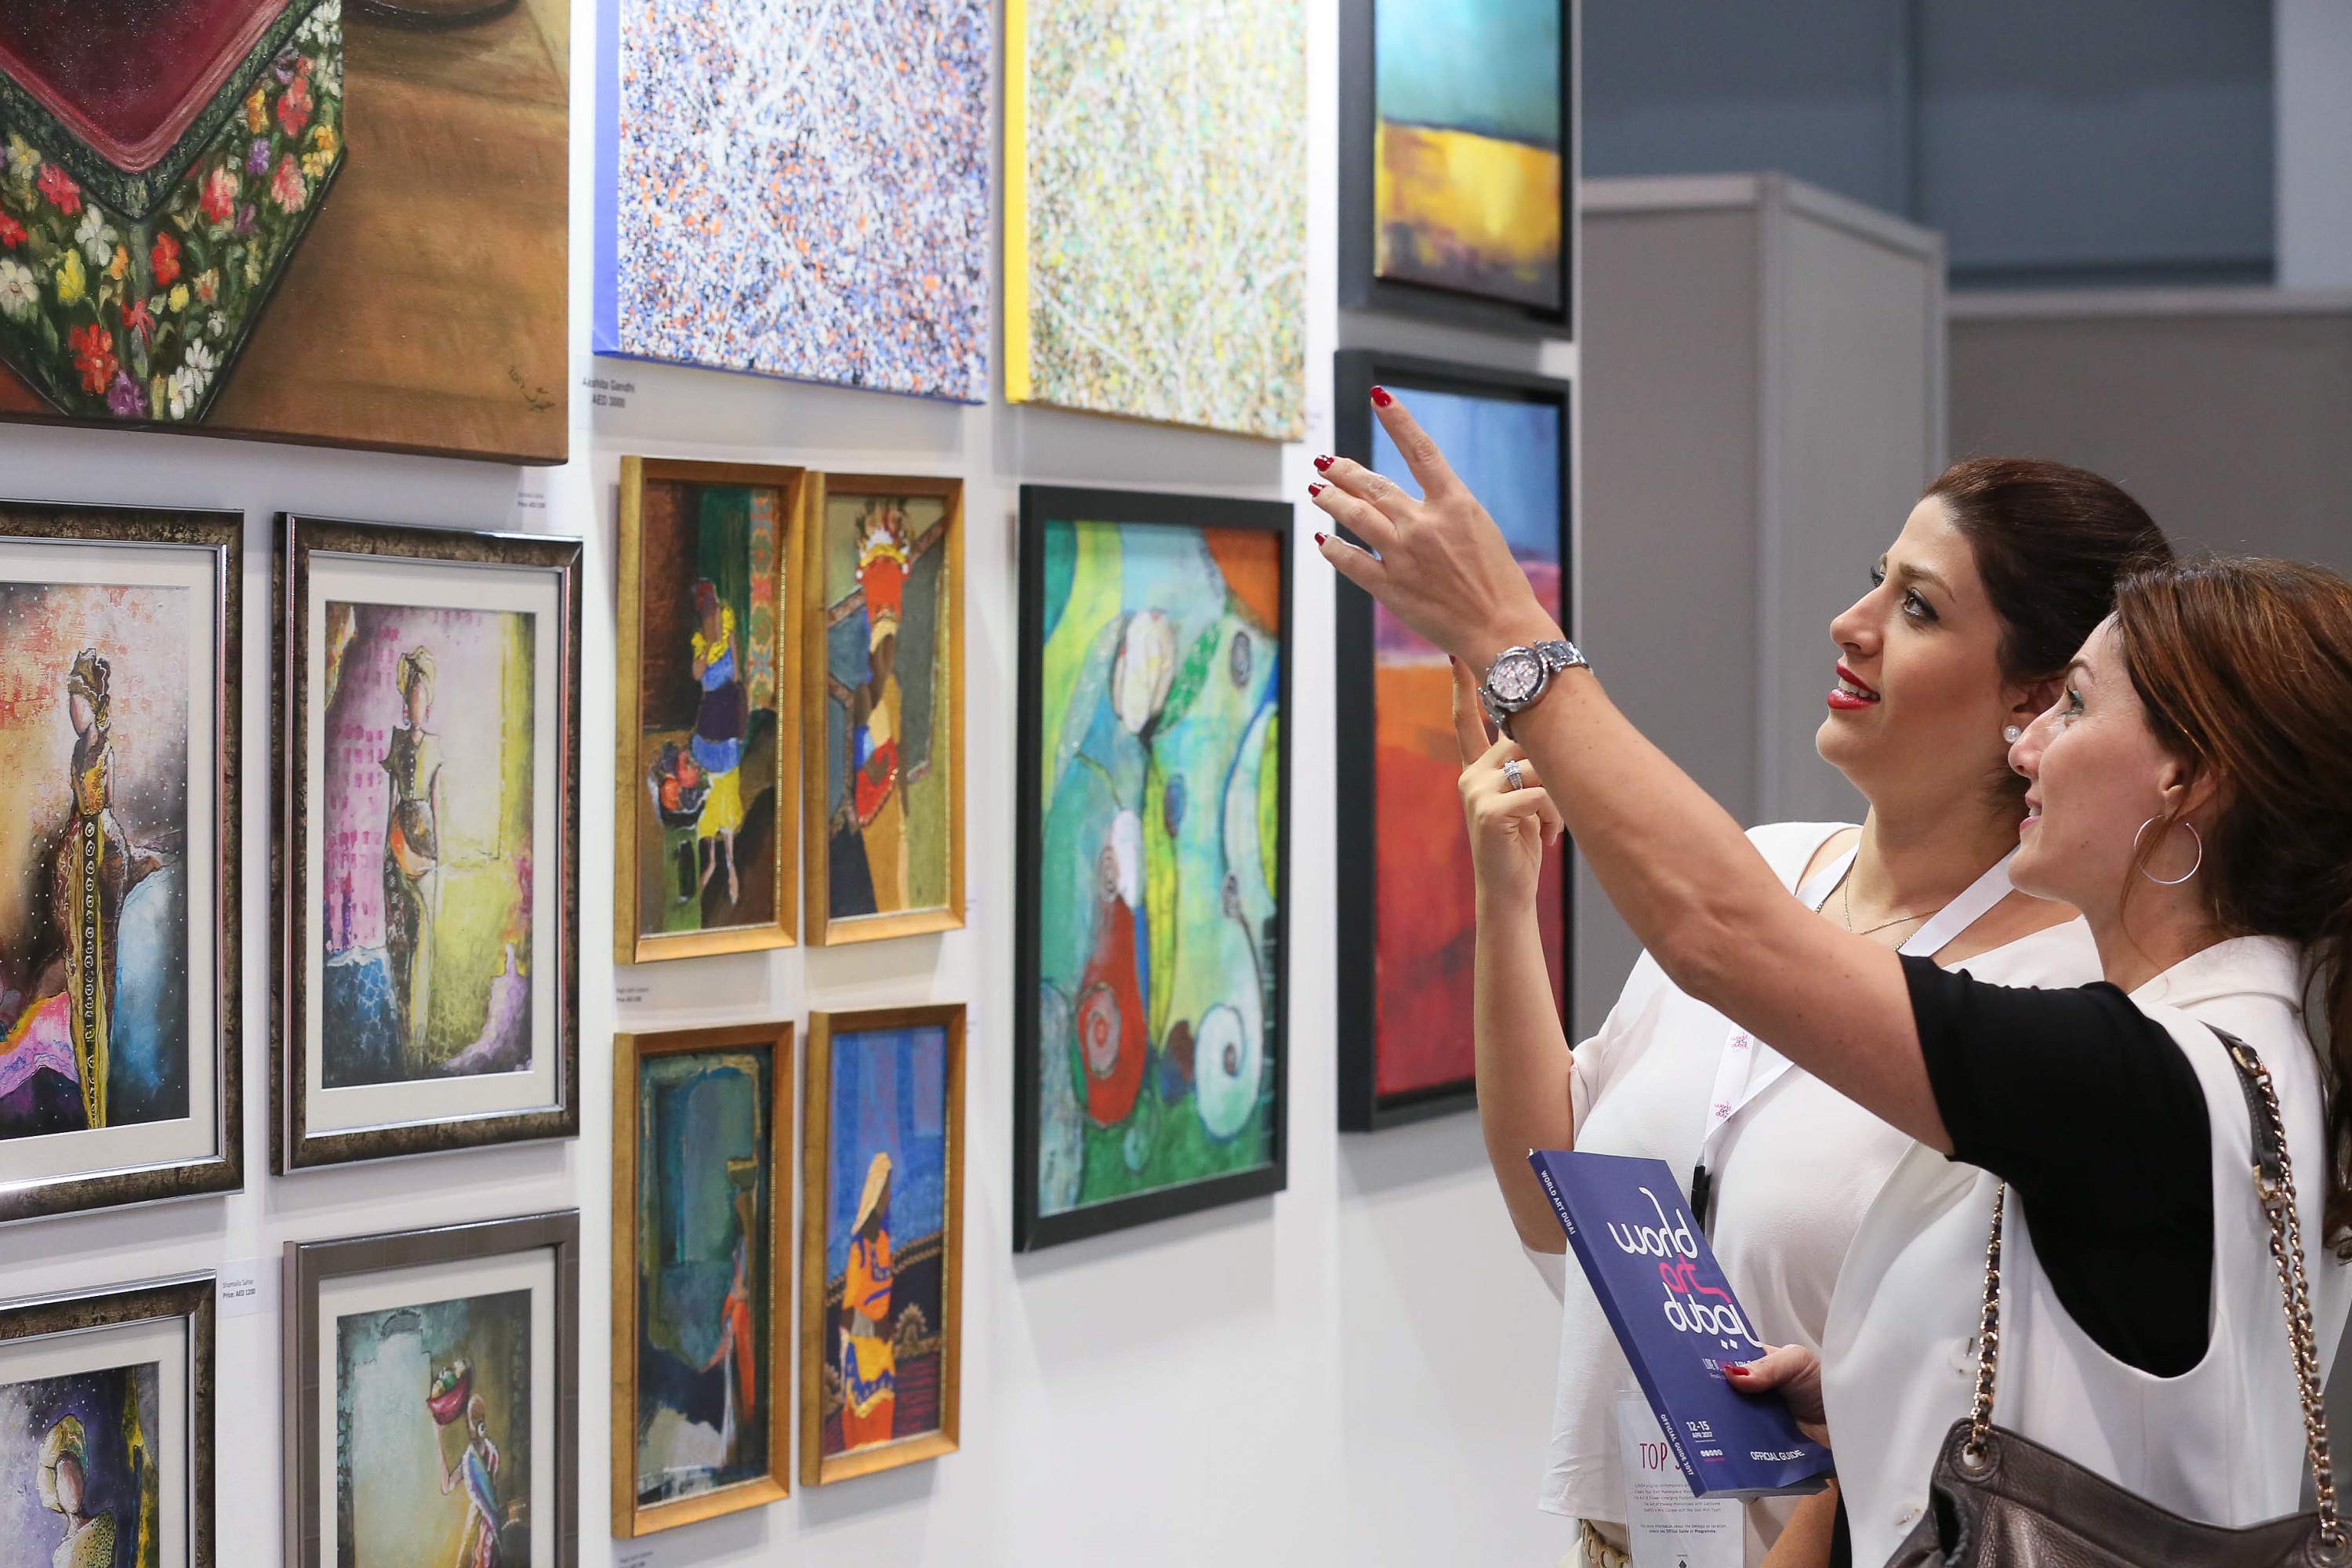 معرض فنون العالم دبي ينطلق في شهر أكتوبر المقبل